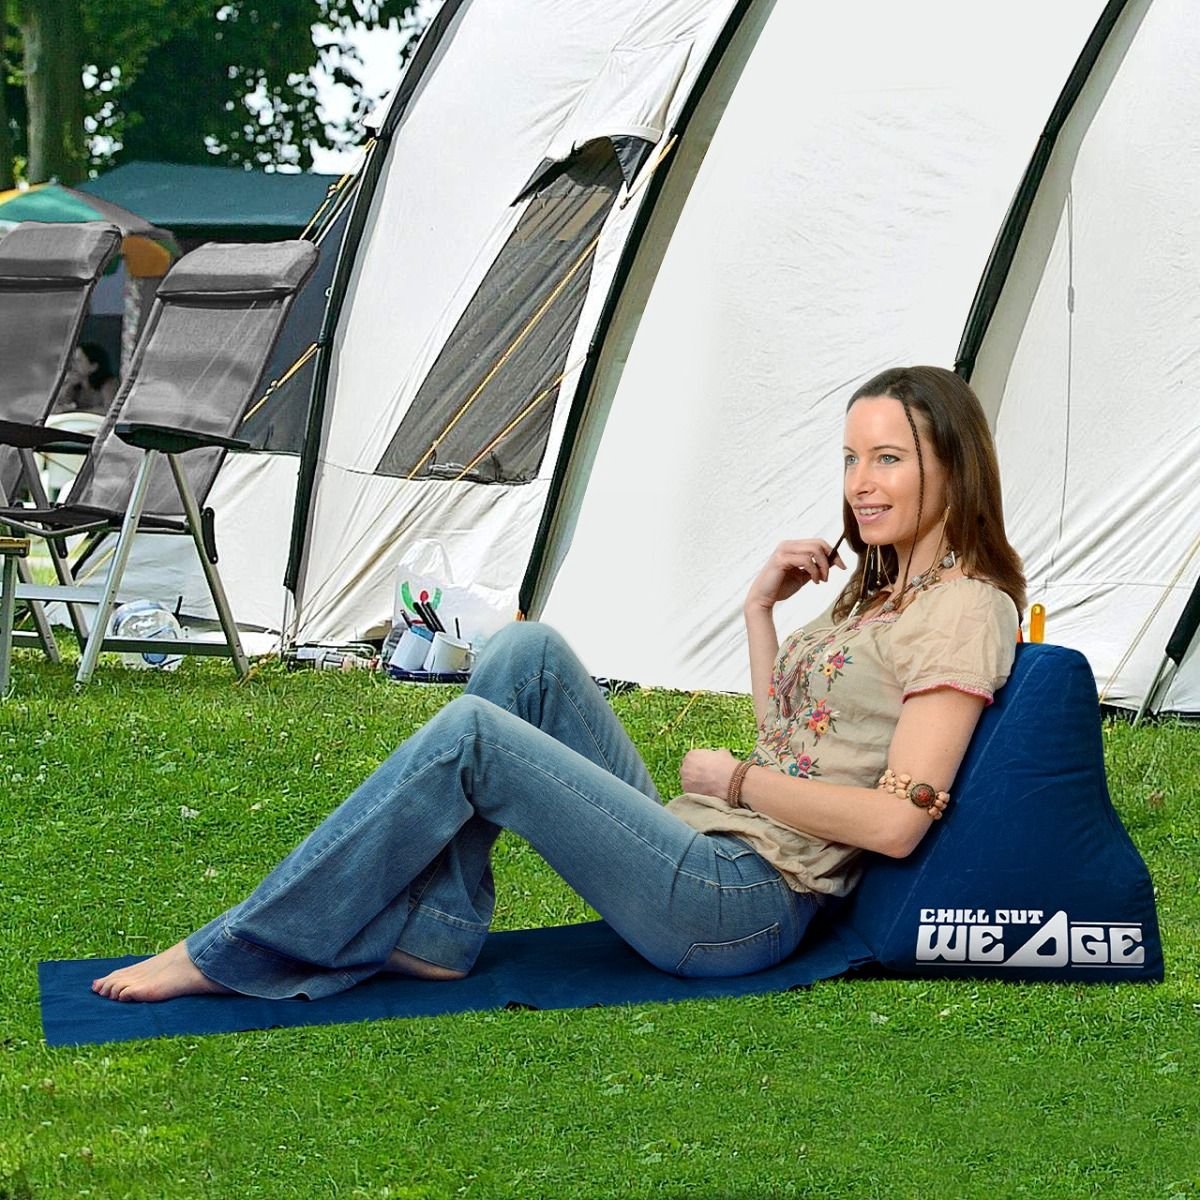 CKB LTD - Chill Out - Luchtbed - Campingstoel - Wedge opblaasbare ligstoel - Blauw strandstoel 1 persoons volwassen luchtbedden kampeerstoel vouwstoel stoel slaapmatje slaapmatten opvouwbaar volwassenen tuinstoel opblaasstoel kampeerstoelen lucht